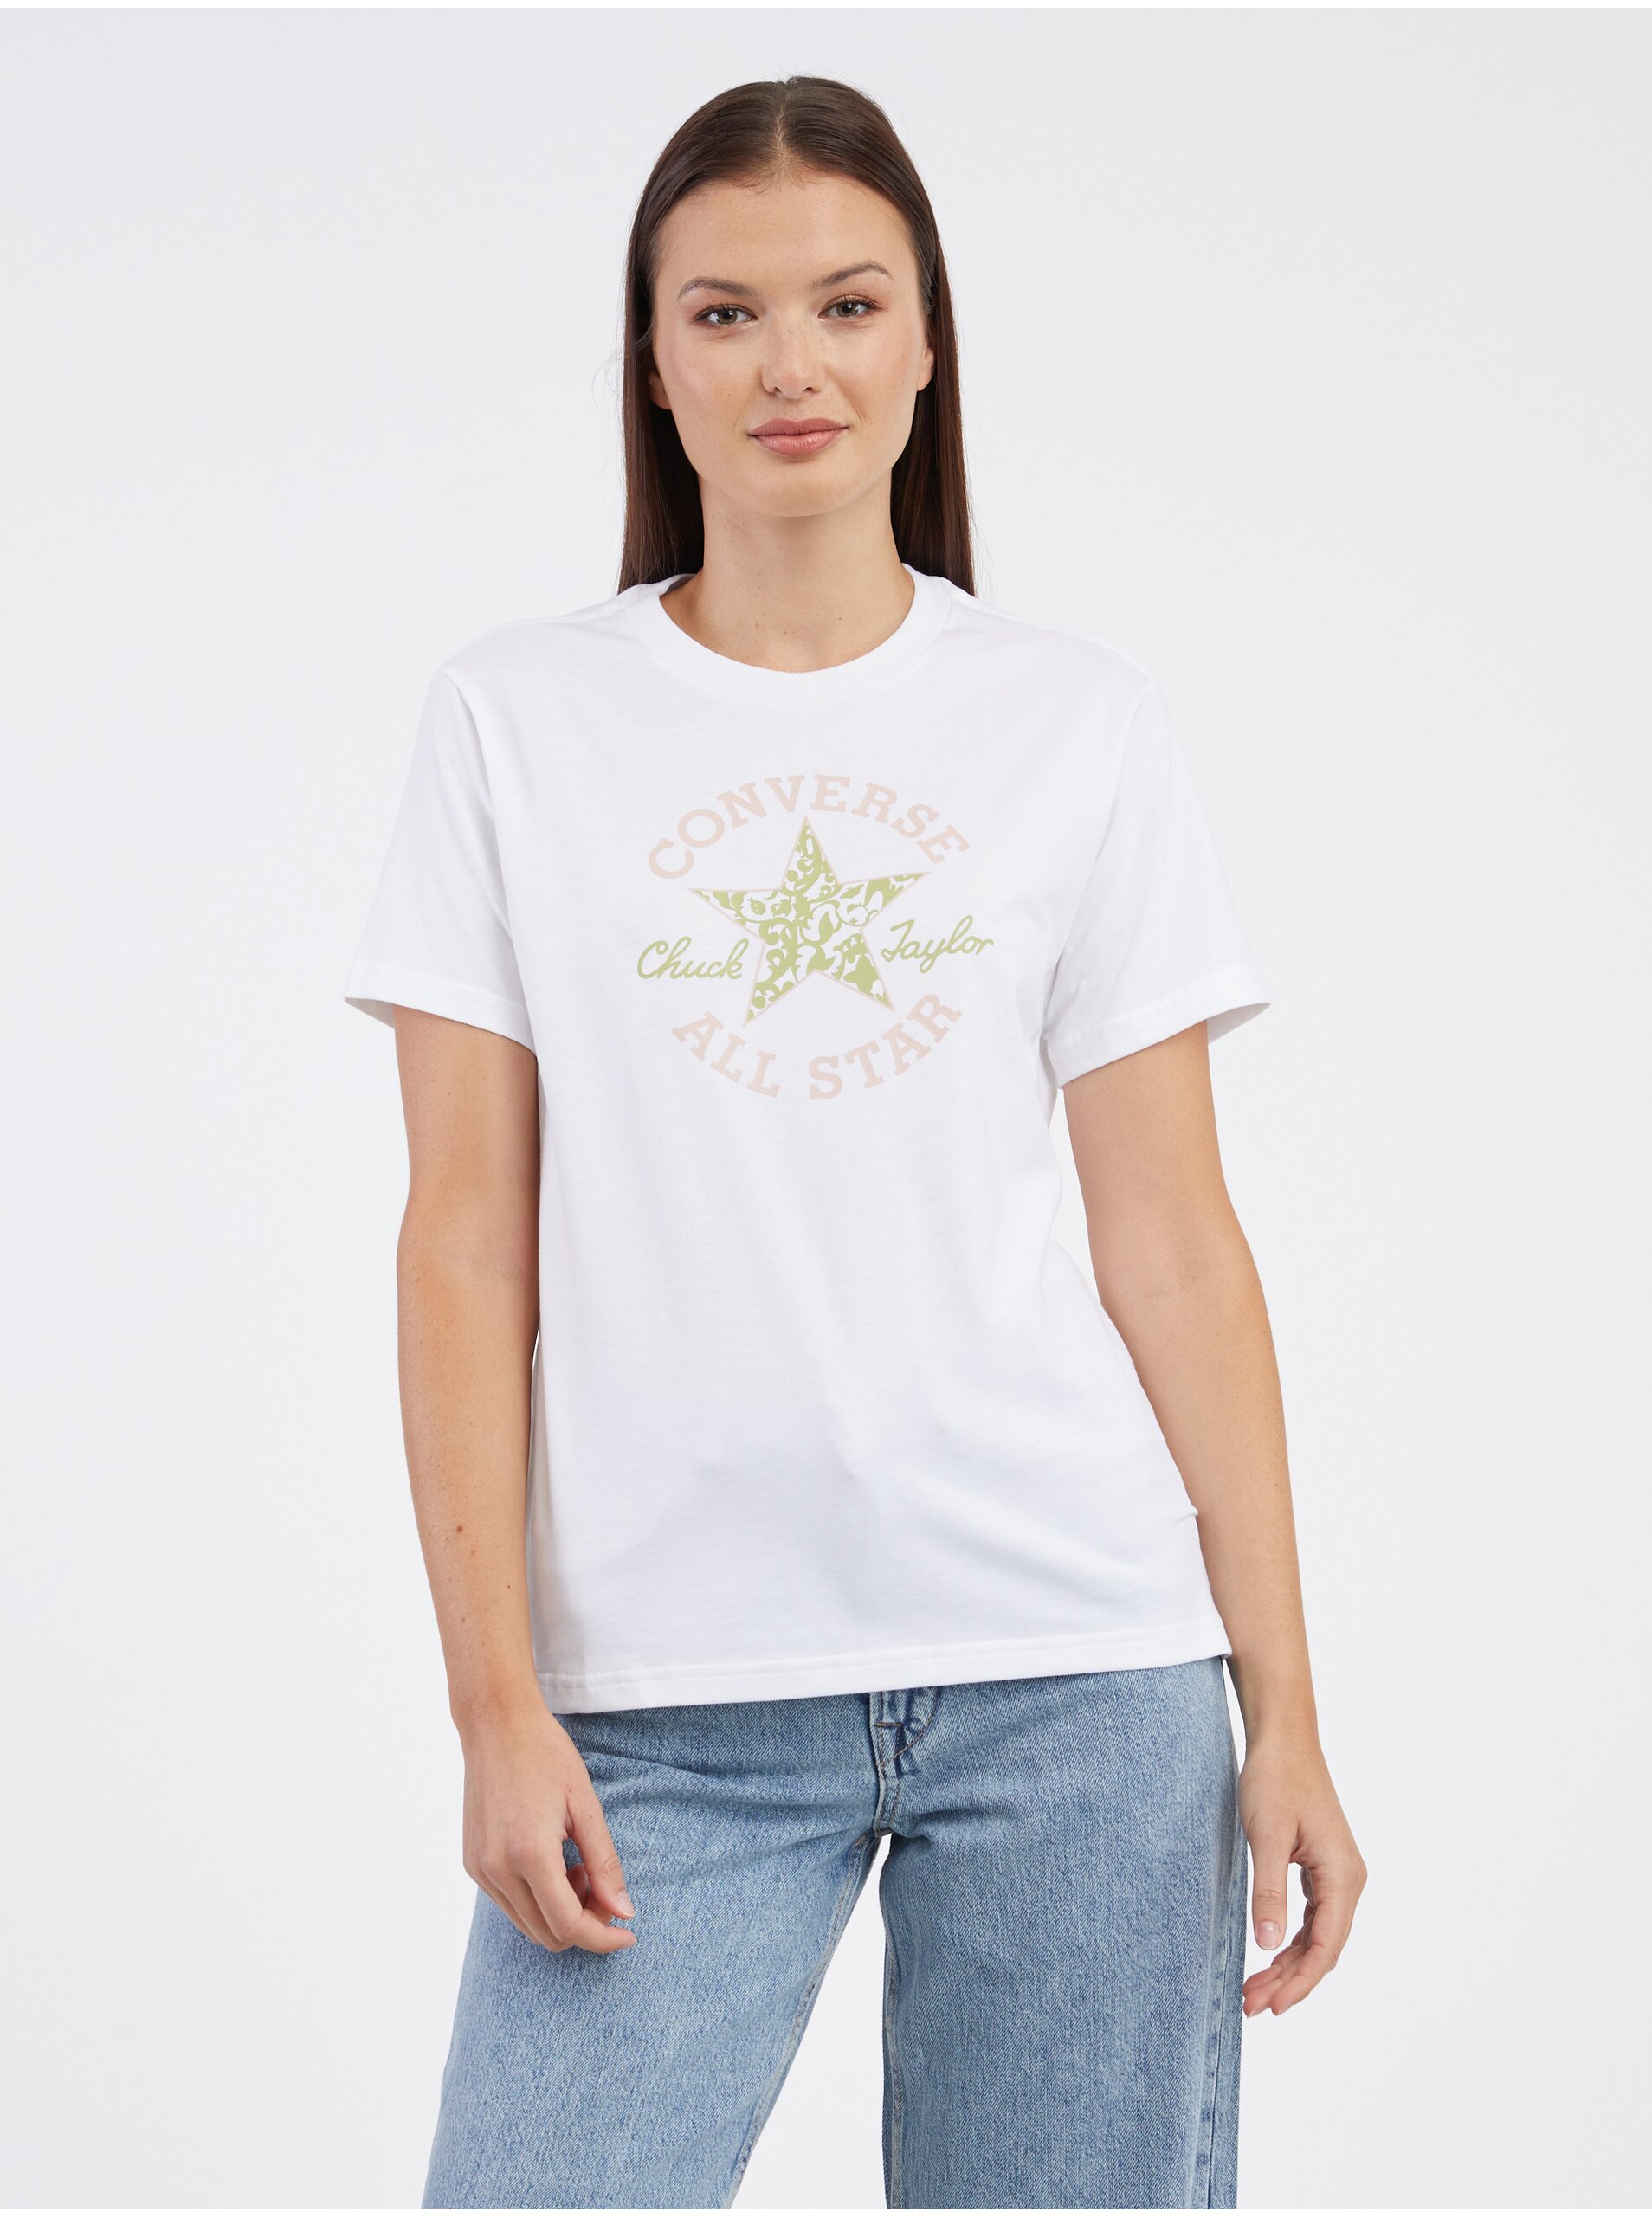 Lacno Biele dámske tričko Converse Chuck Taylor Floral